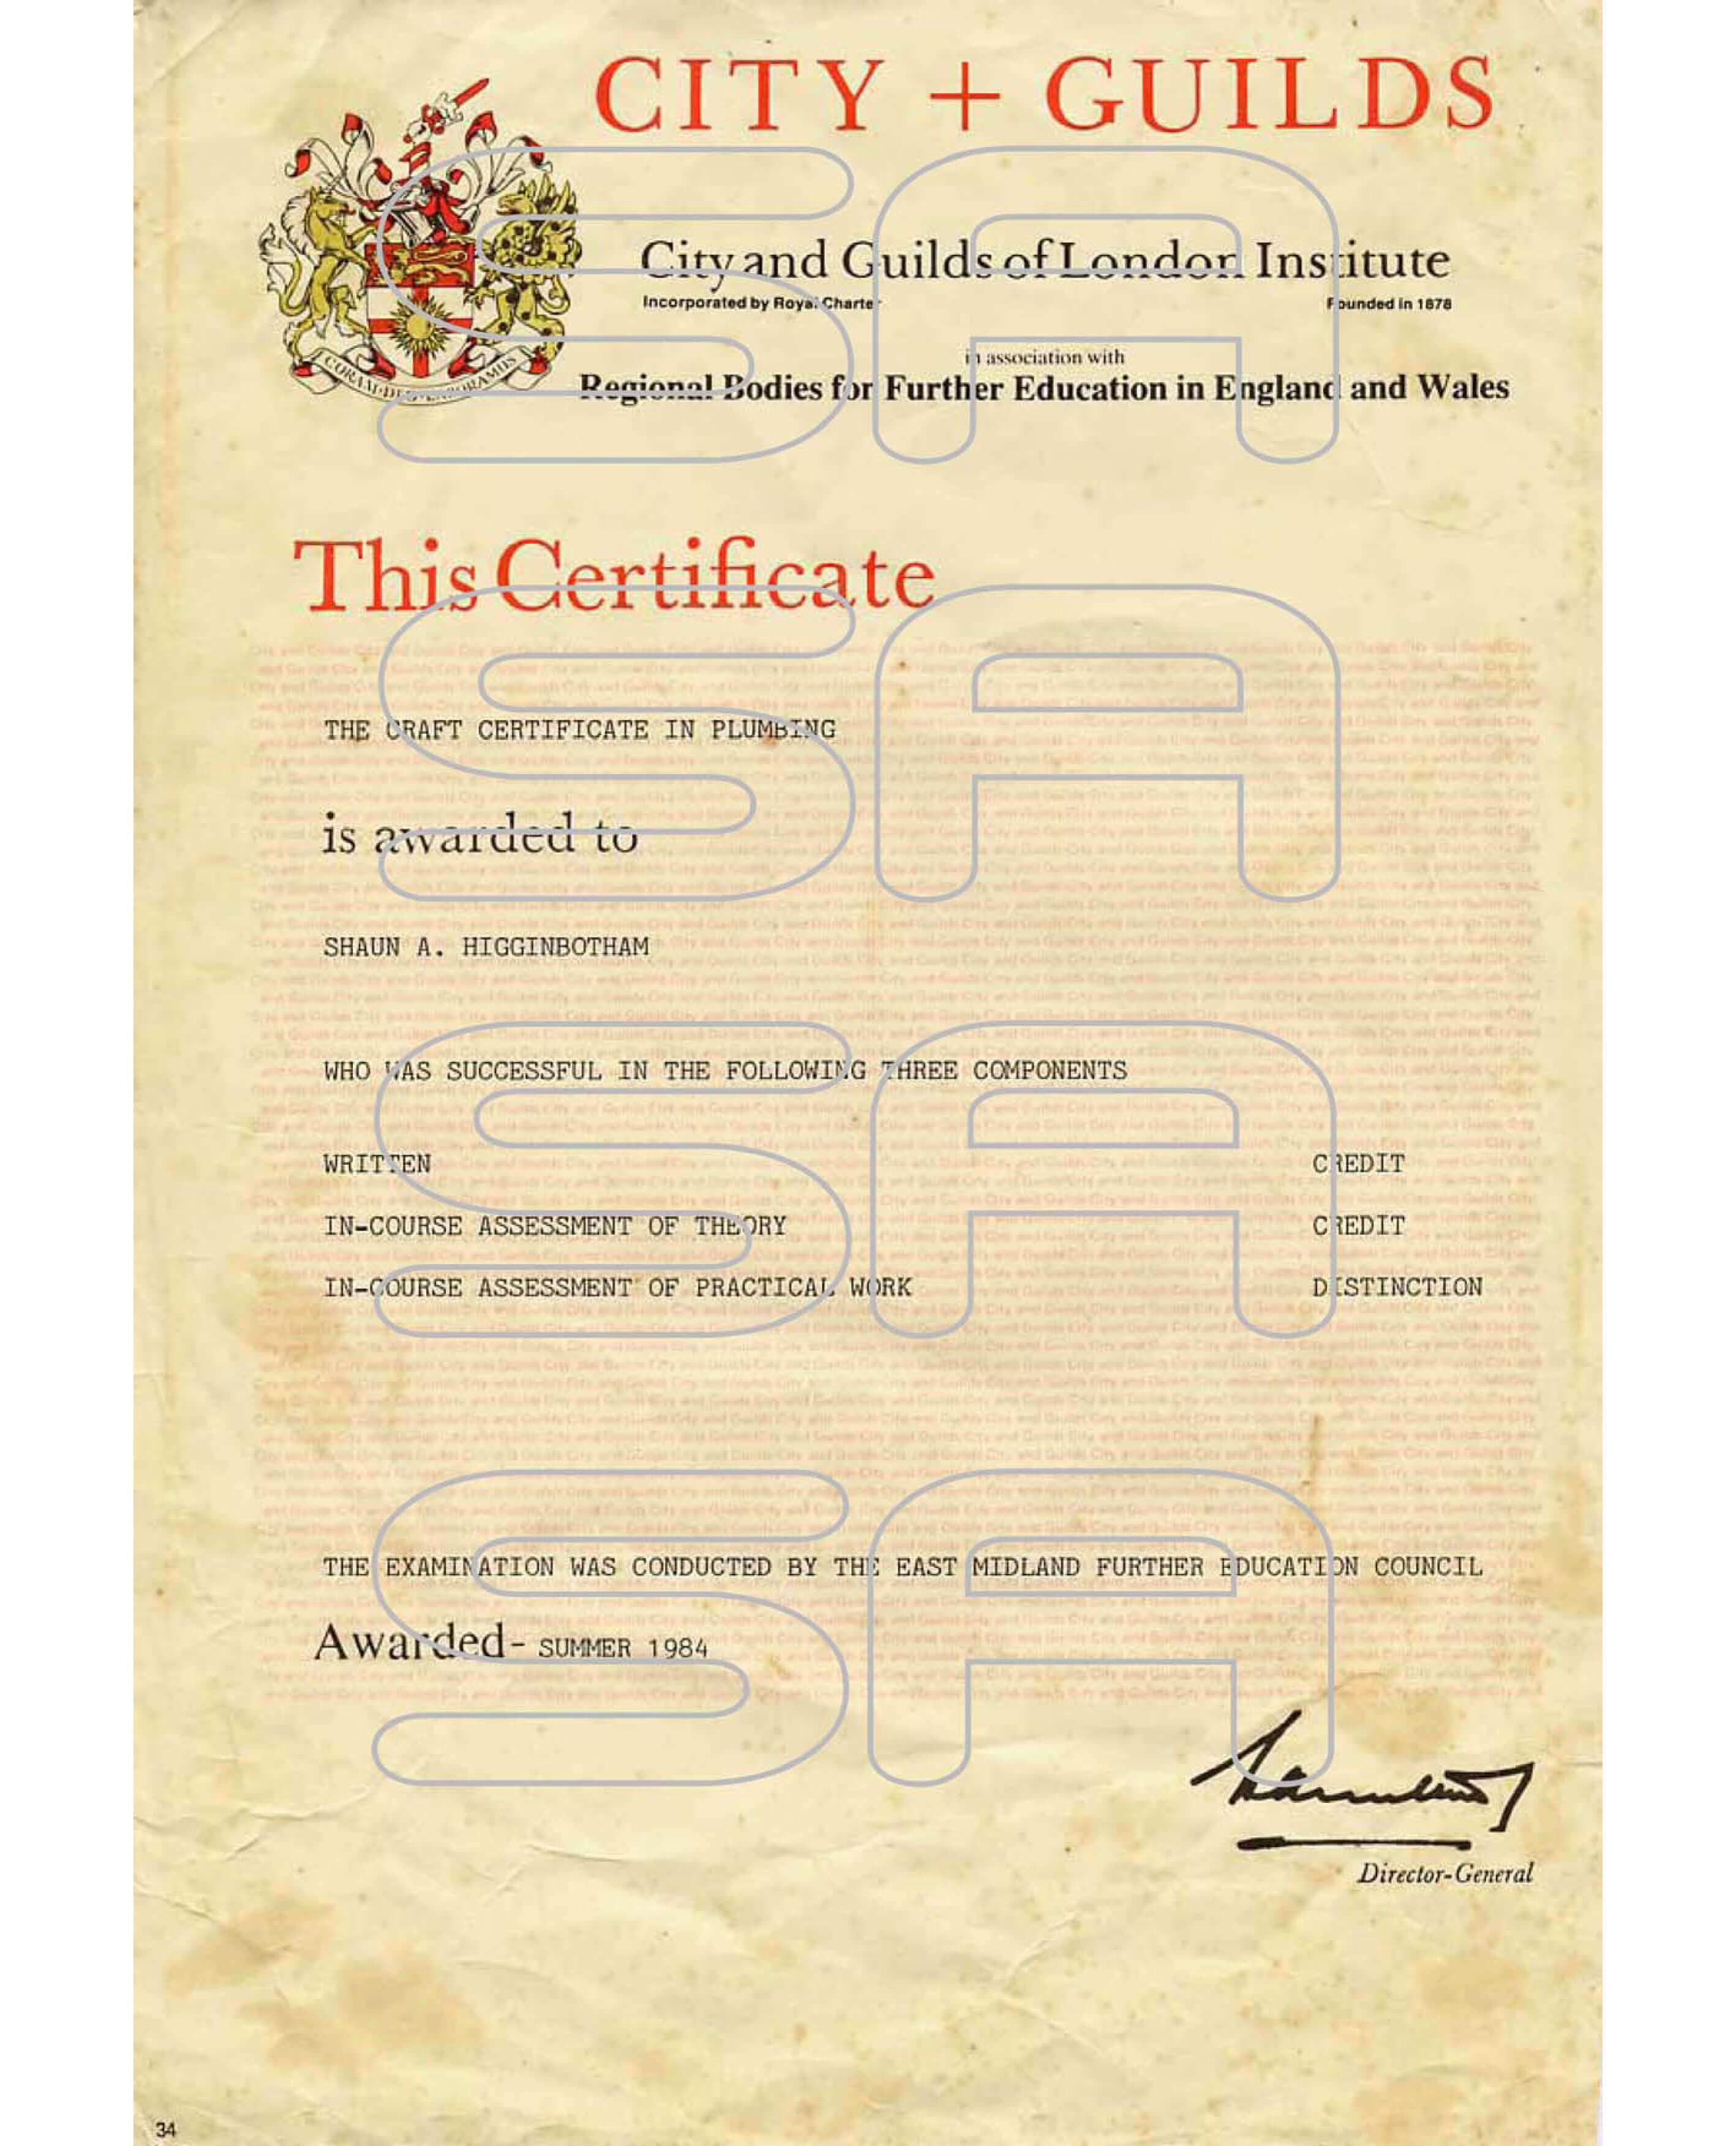 boiler Gas Certificate